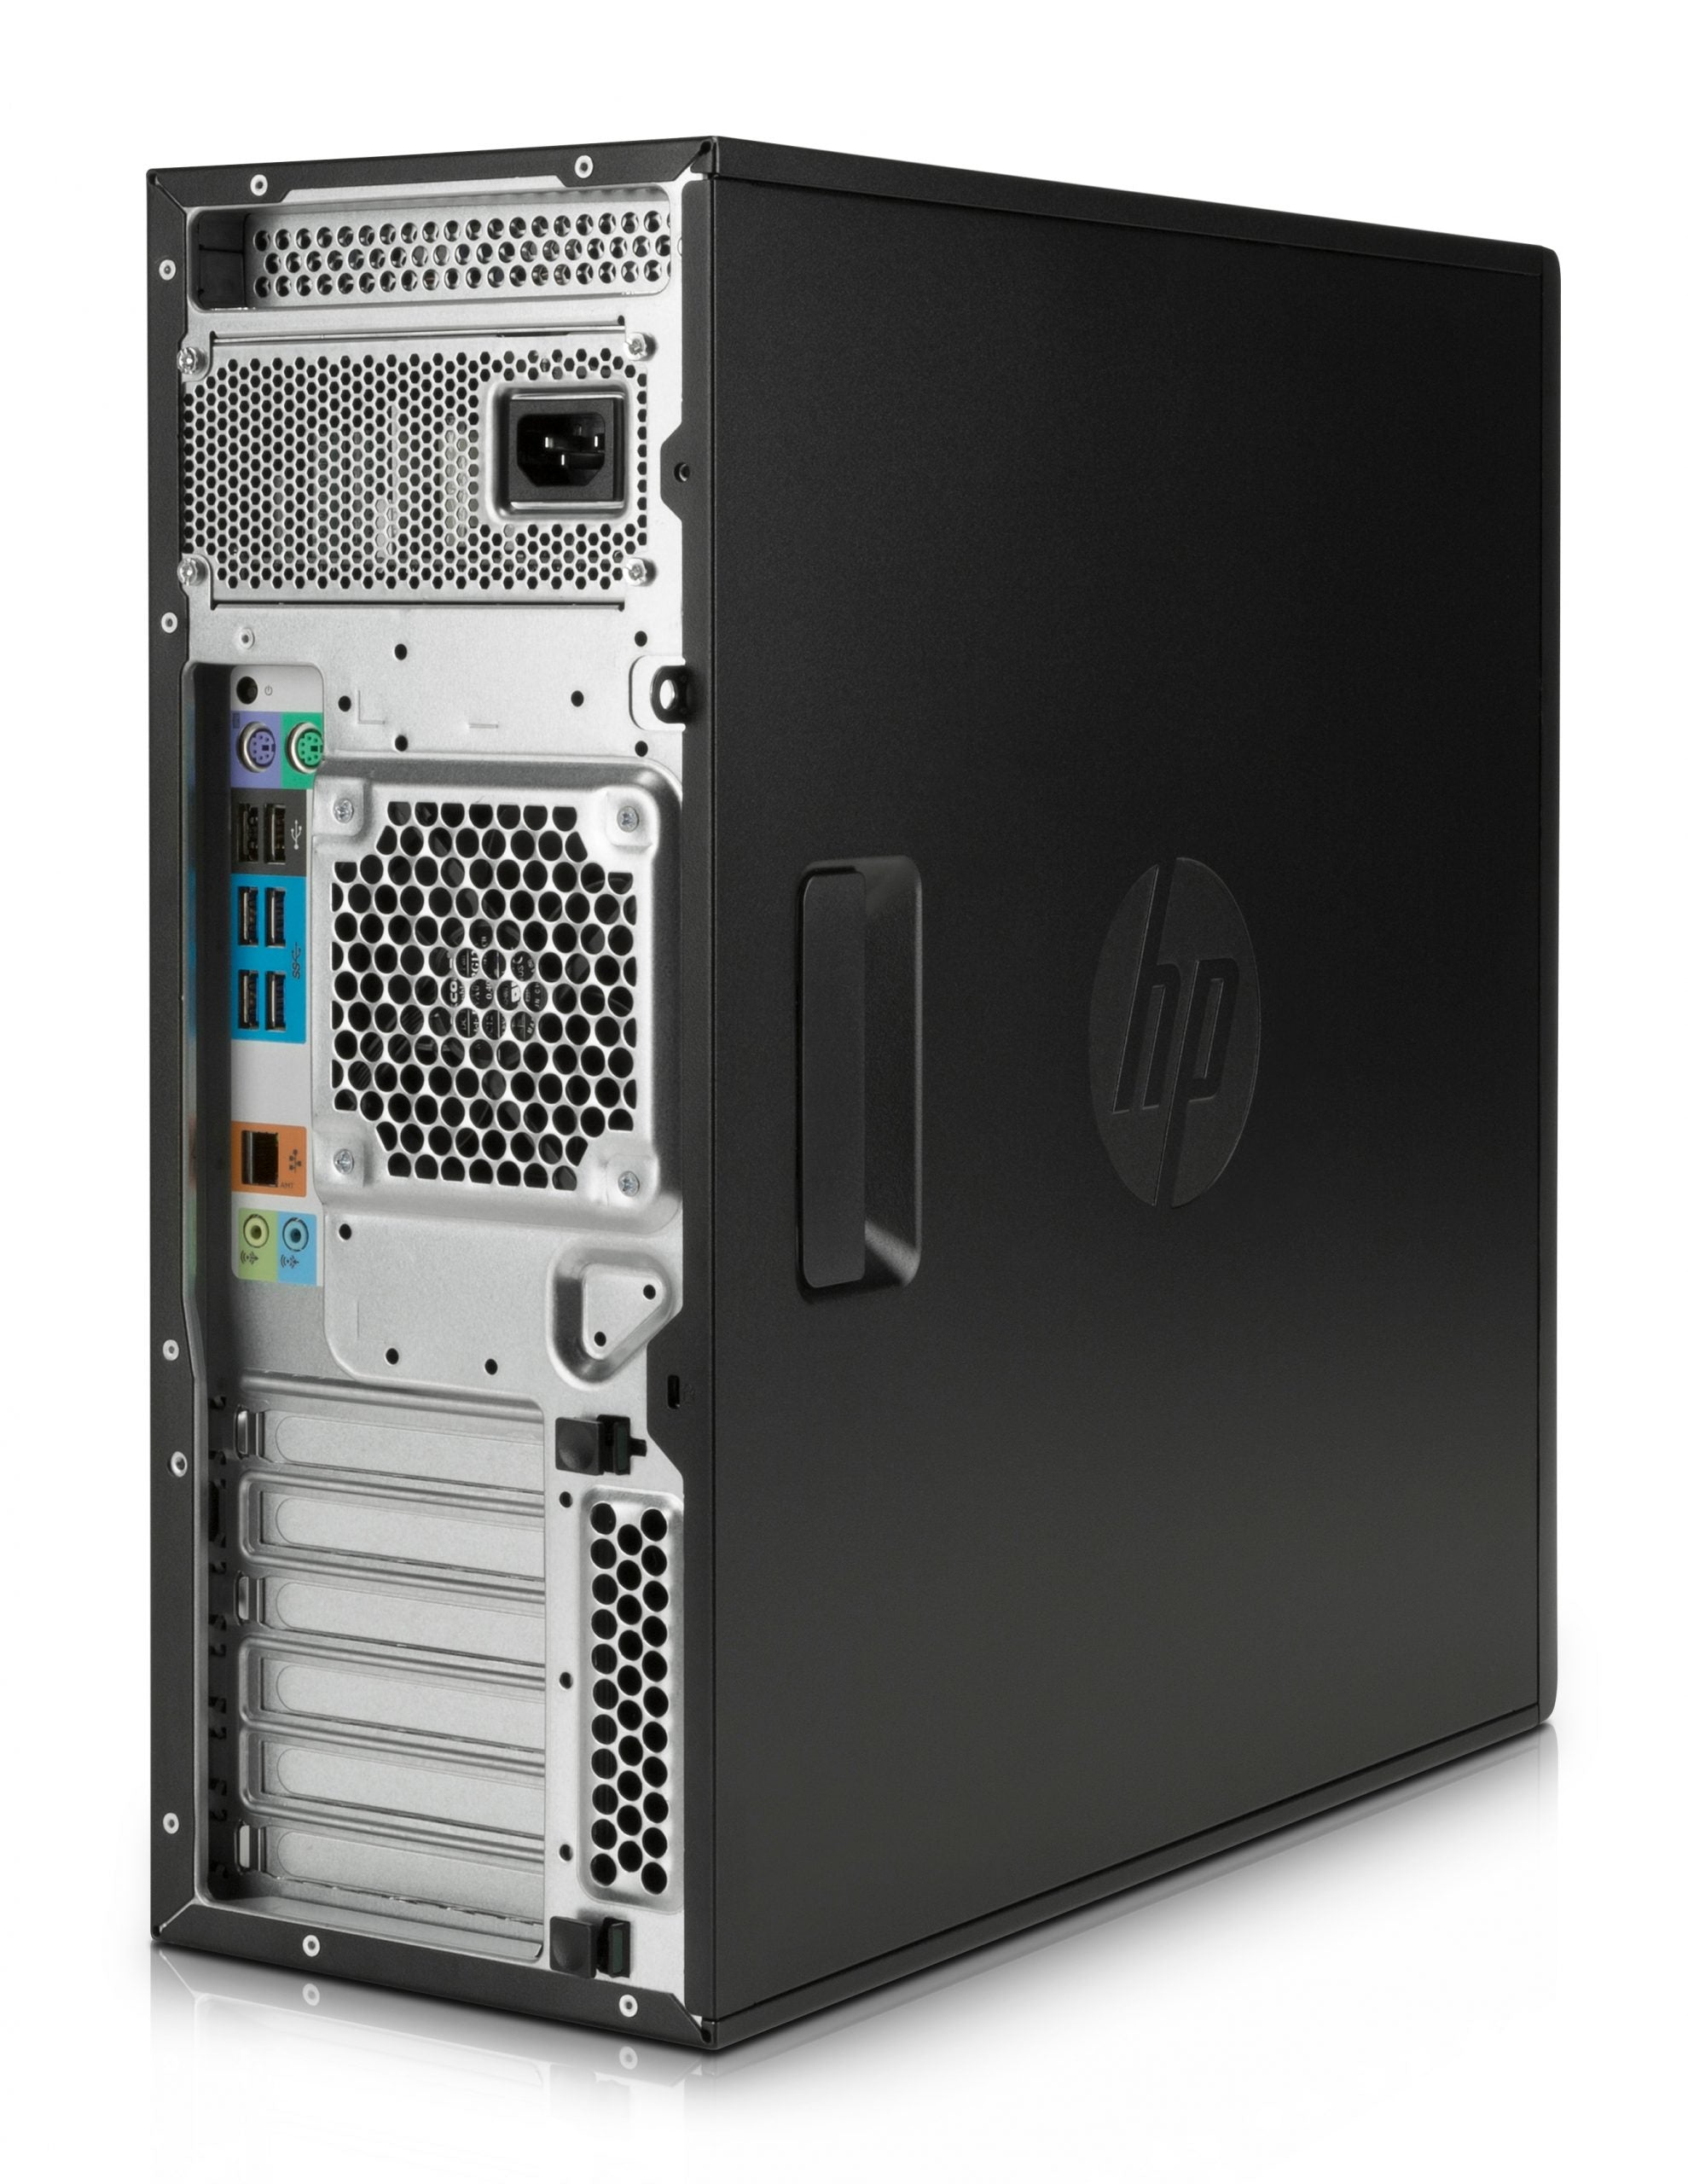 Ricondizionato - HP Z440 Workstation Tower | Intel Xeon E5-1603 2.85Ghz |  SSD 1Tb | 32Gb Ram | Nvidia Quadro K2200 4Gb | Windows 10 Pro -  Messoanuovo.it - Usato e Ricondizionato Garantito